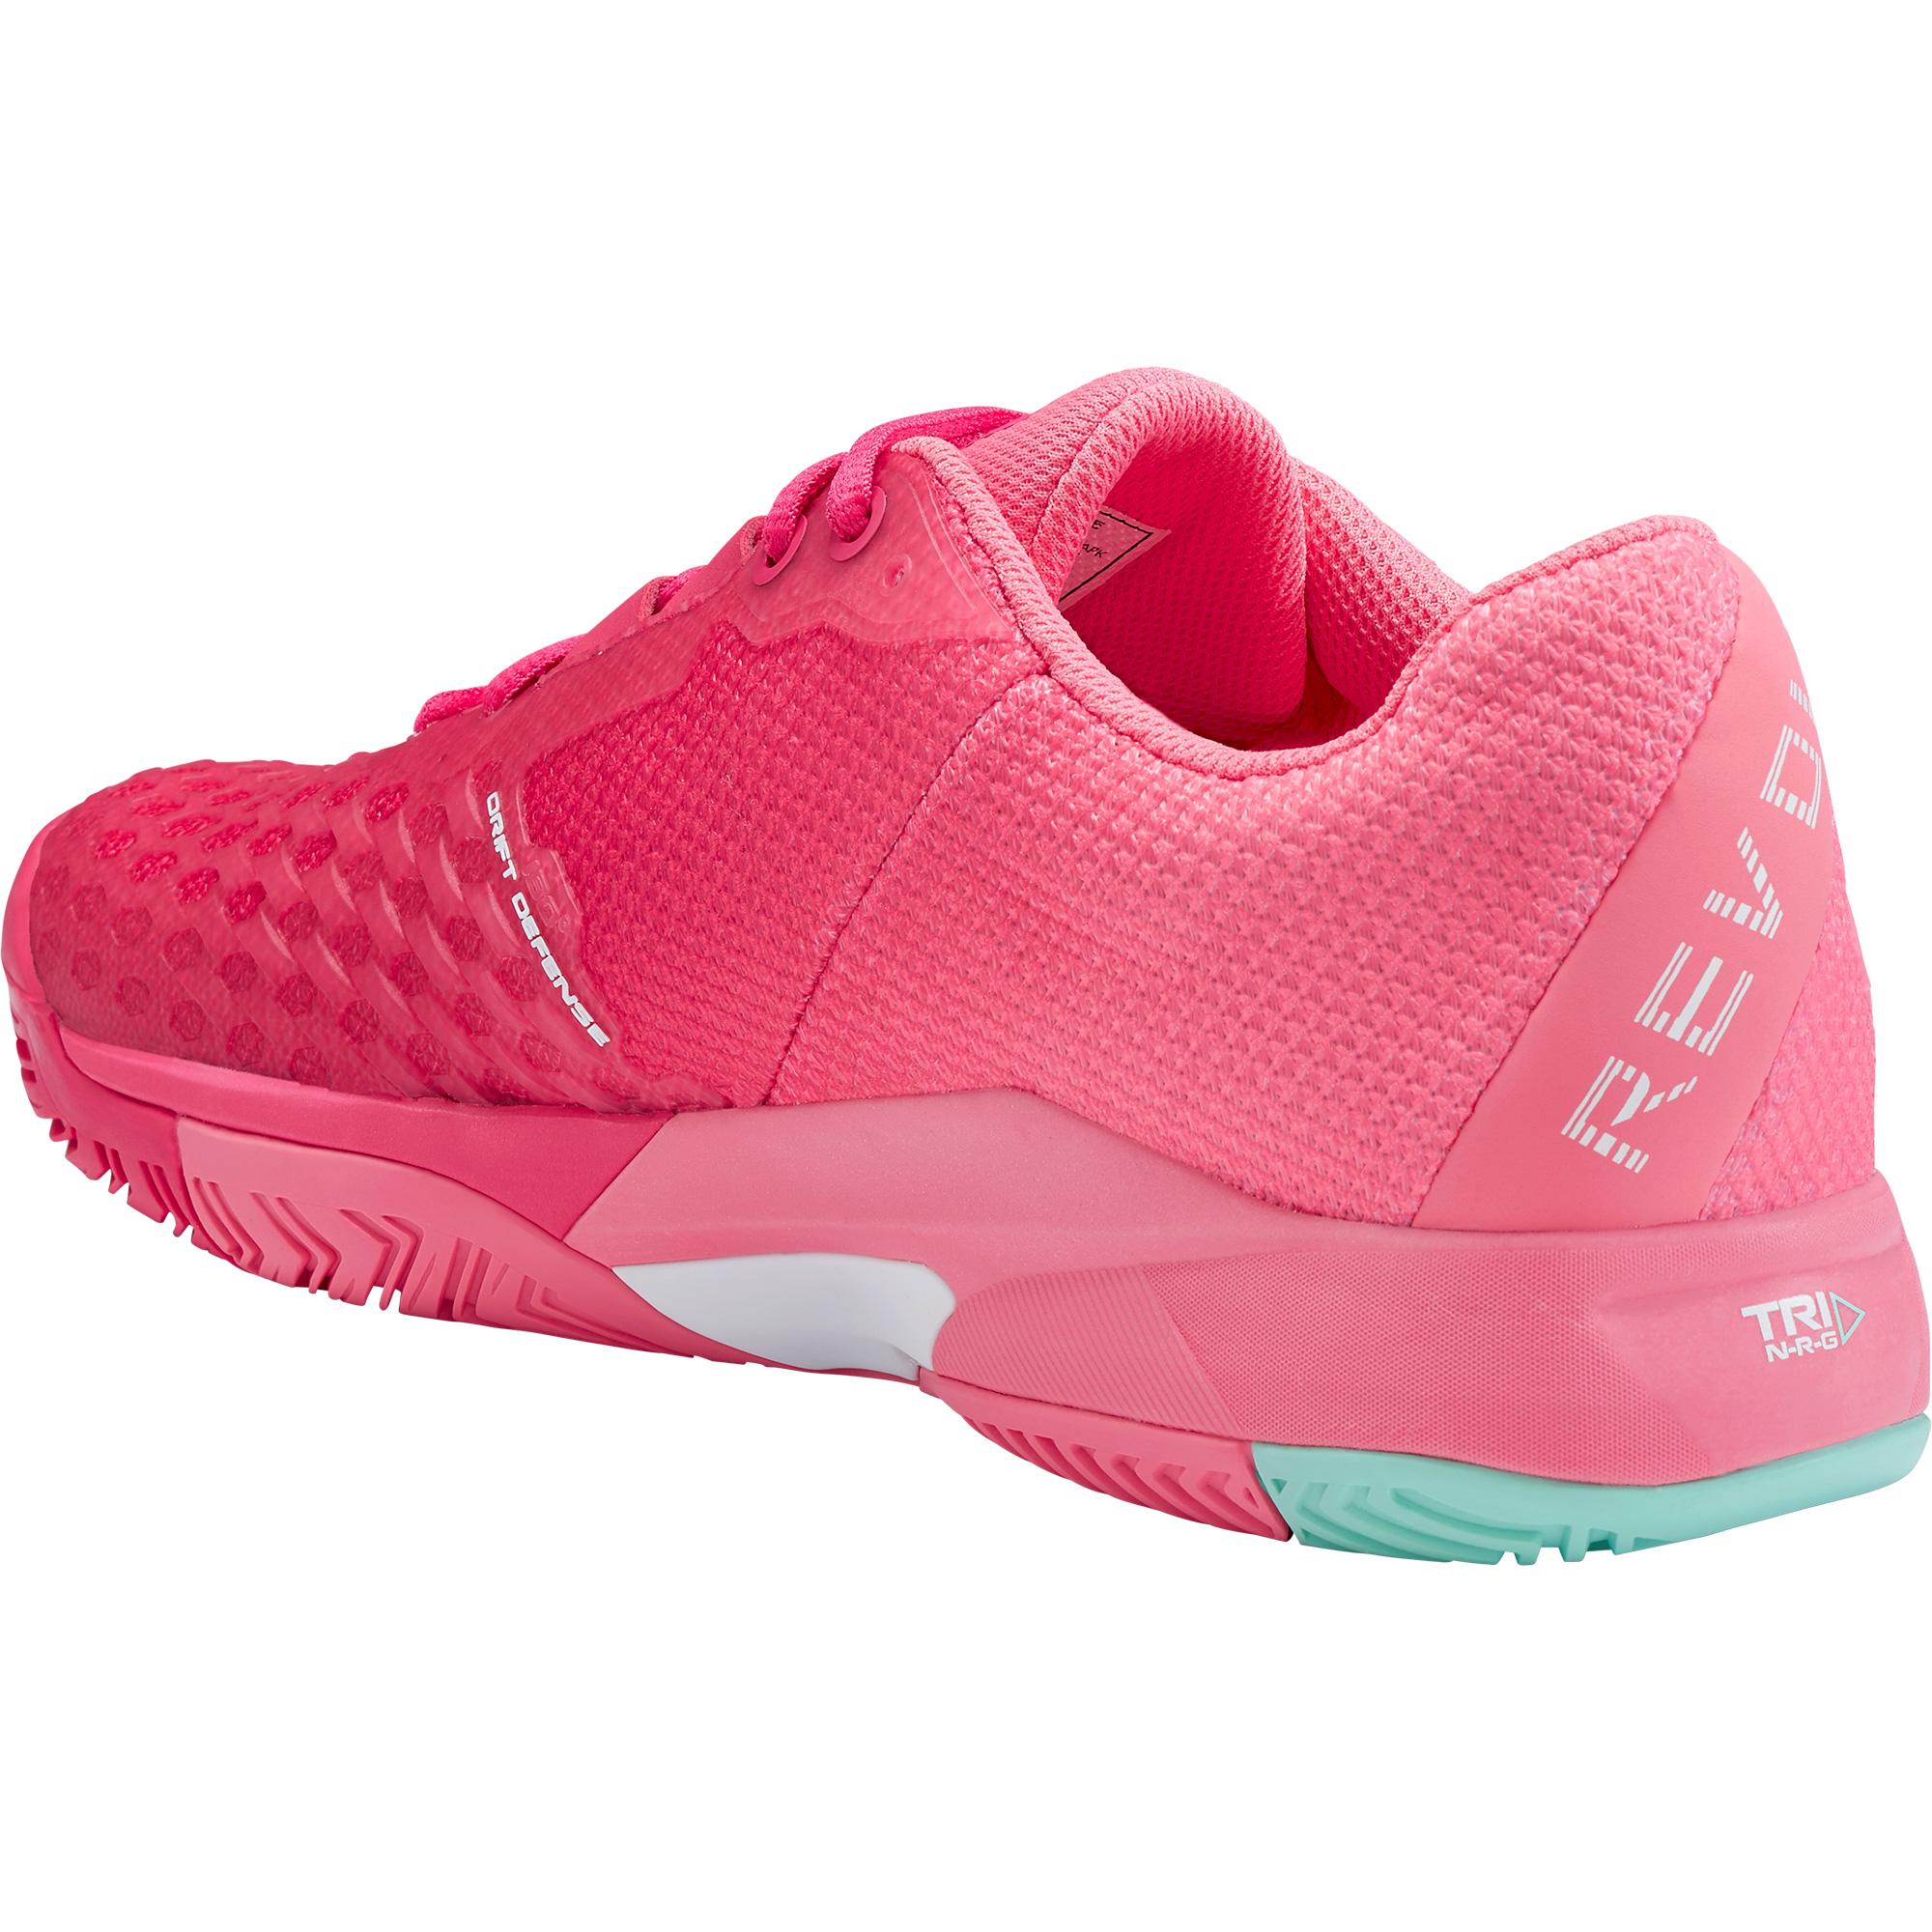 Head Womens Revolt Pro 3.0 Tennis Shoes - Magenta/Pink - Tennisnuts.com